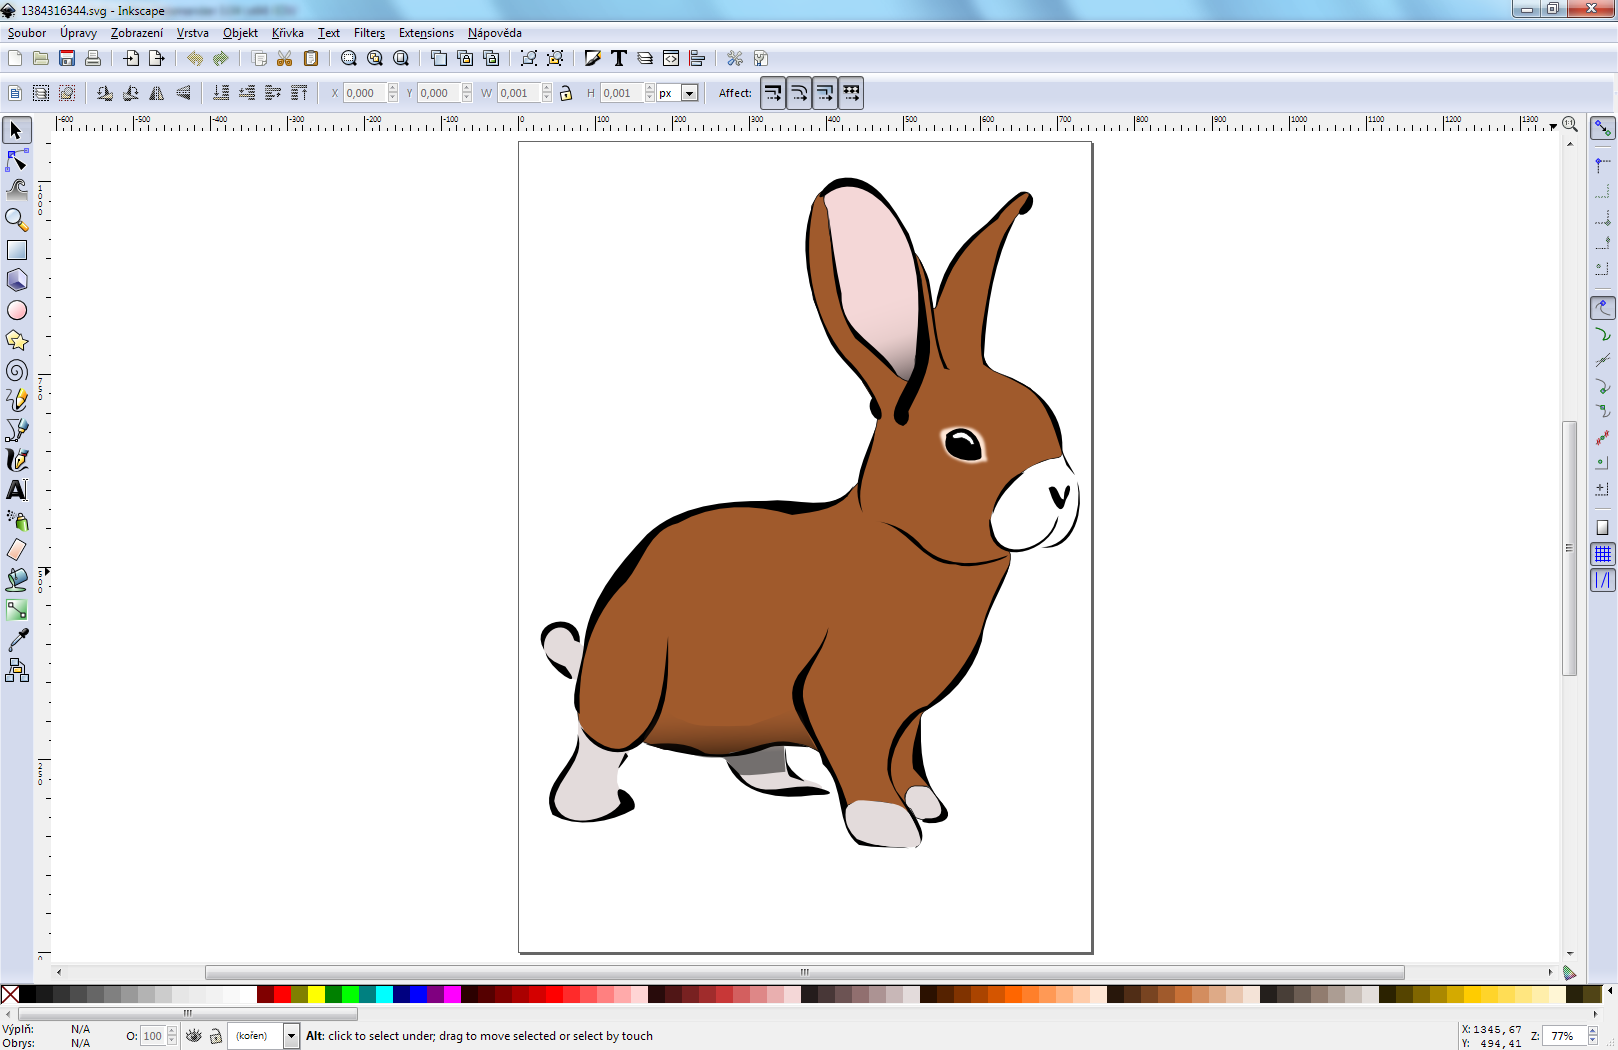 Editor obrázků Inkscape – pohled na hlavní okno pro úpravu obrázku s otevřeným SVG obrázkem hnědého králíka